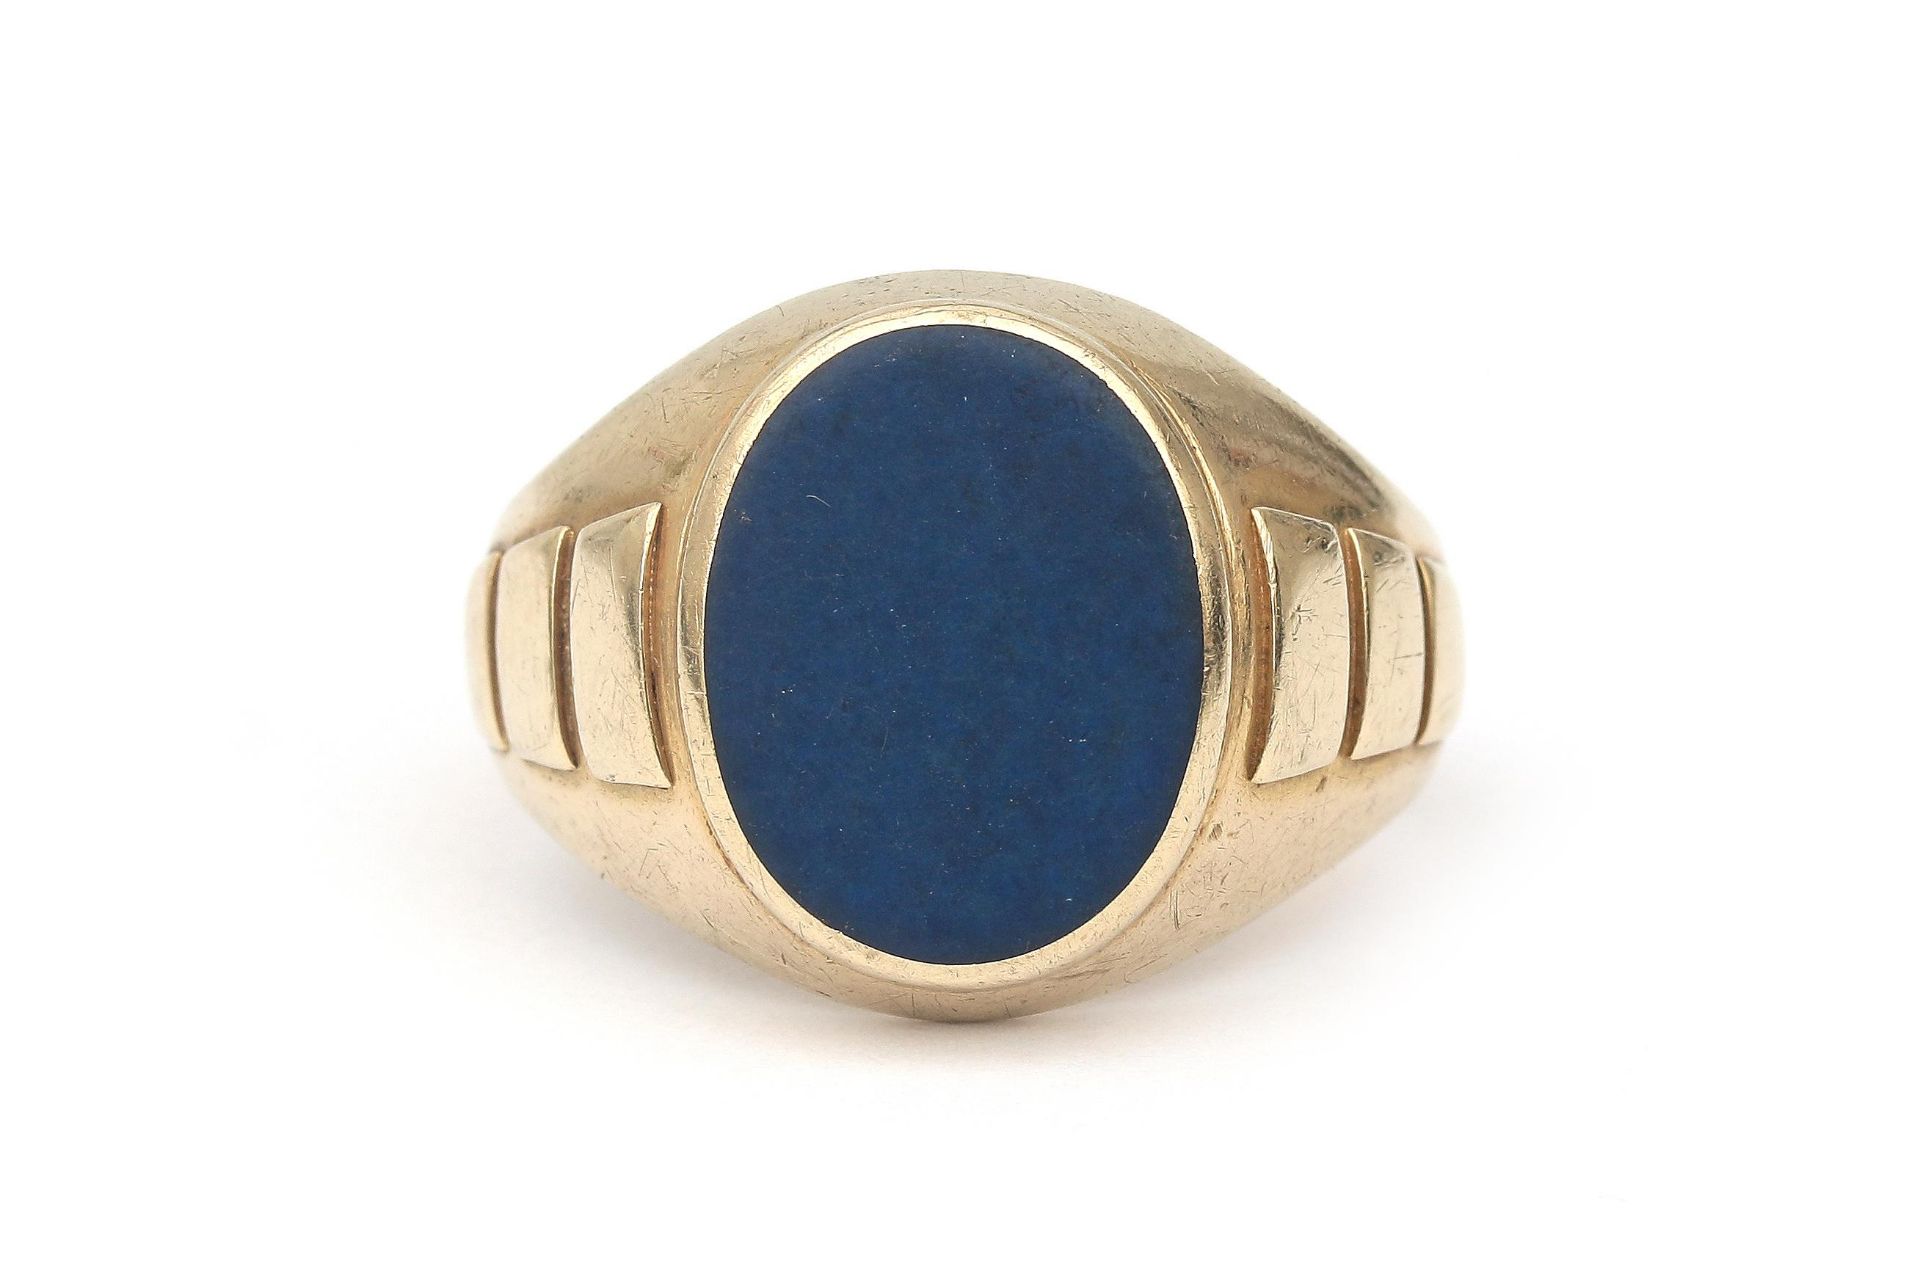 A 14 karat gold lapis lazuli signet ring